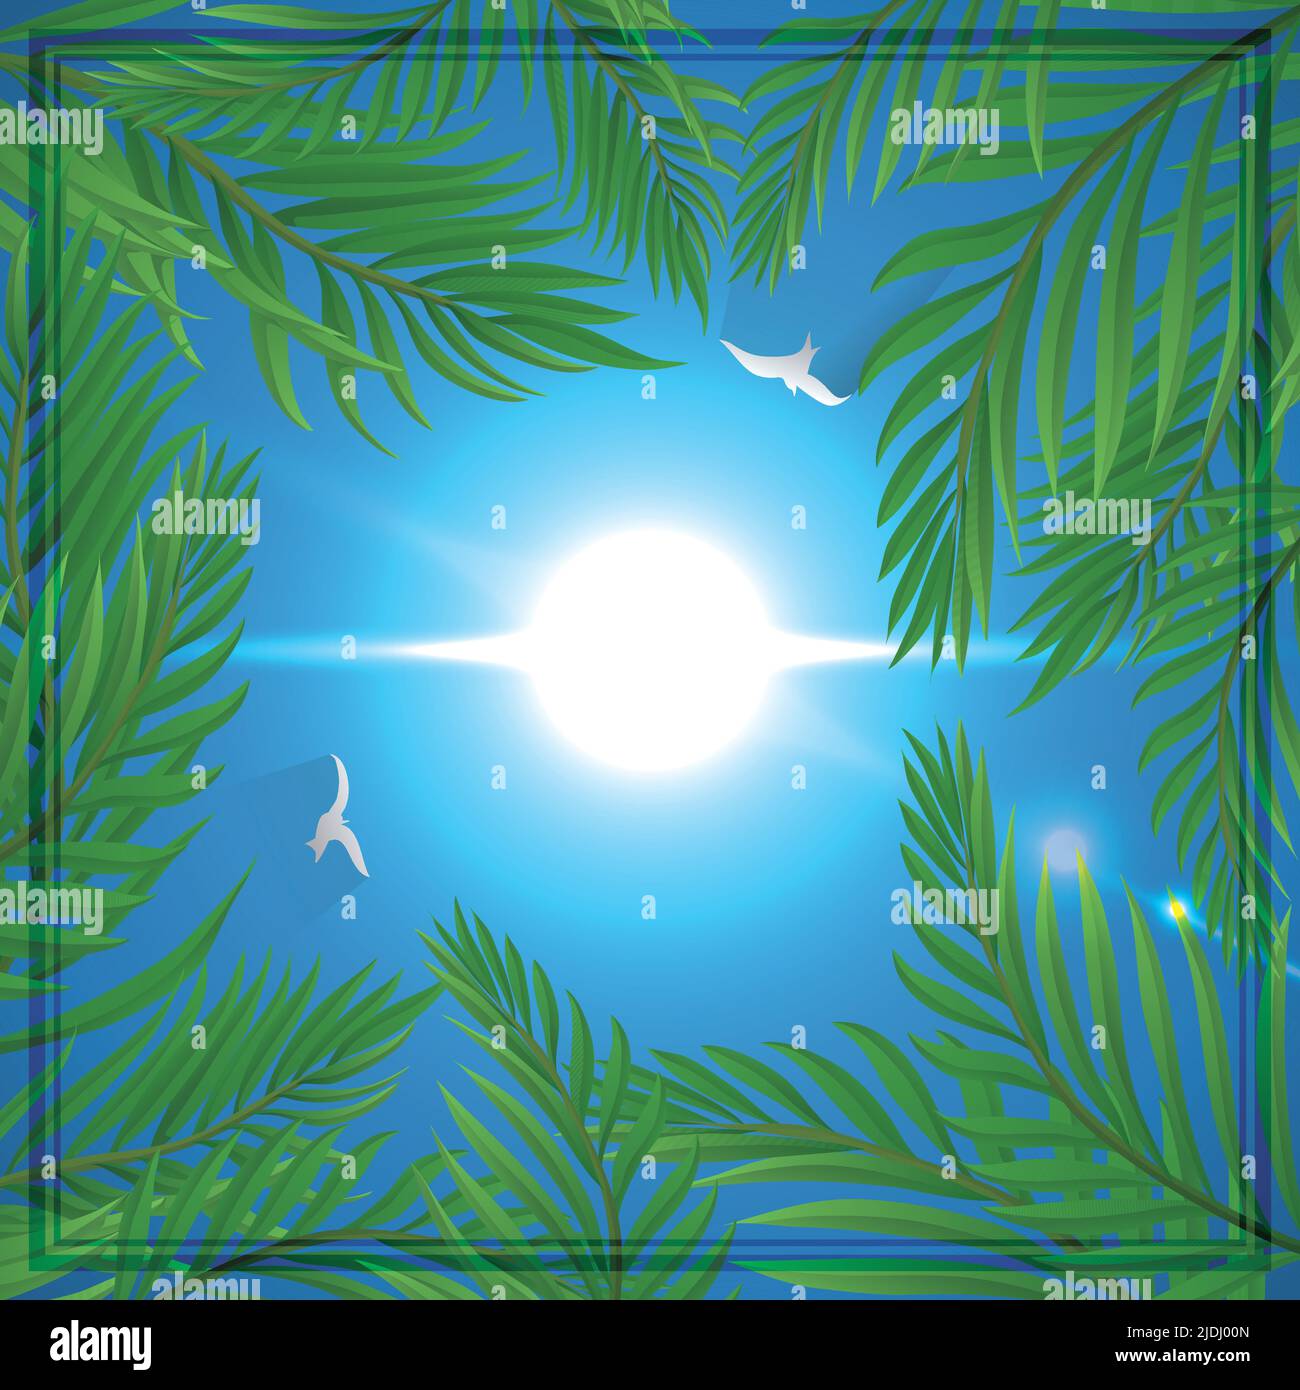 Bella scena quadrata con foglie di palma intorno ad esso, cielo blu, gabbiani volanti, sole luminoso e cornice. Illustrazione Vettoriale